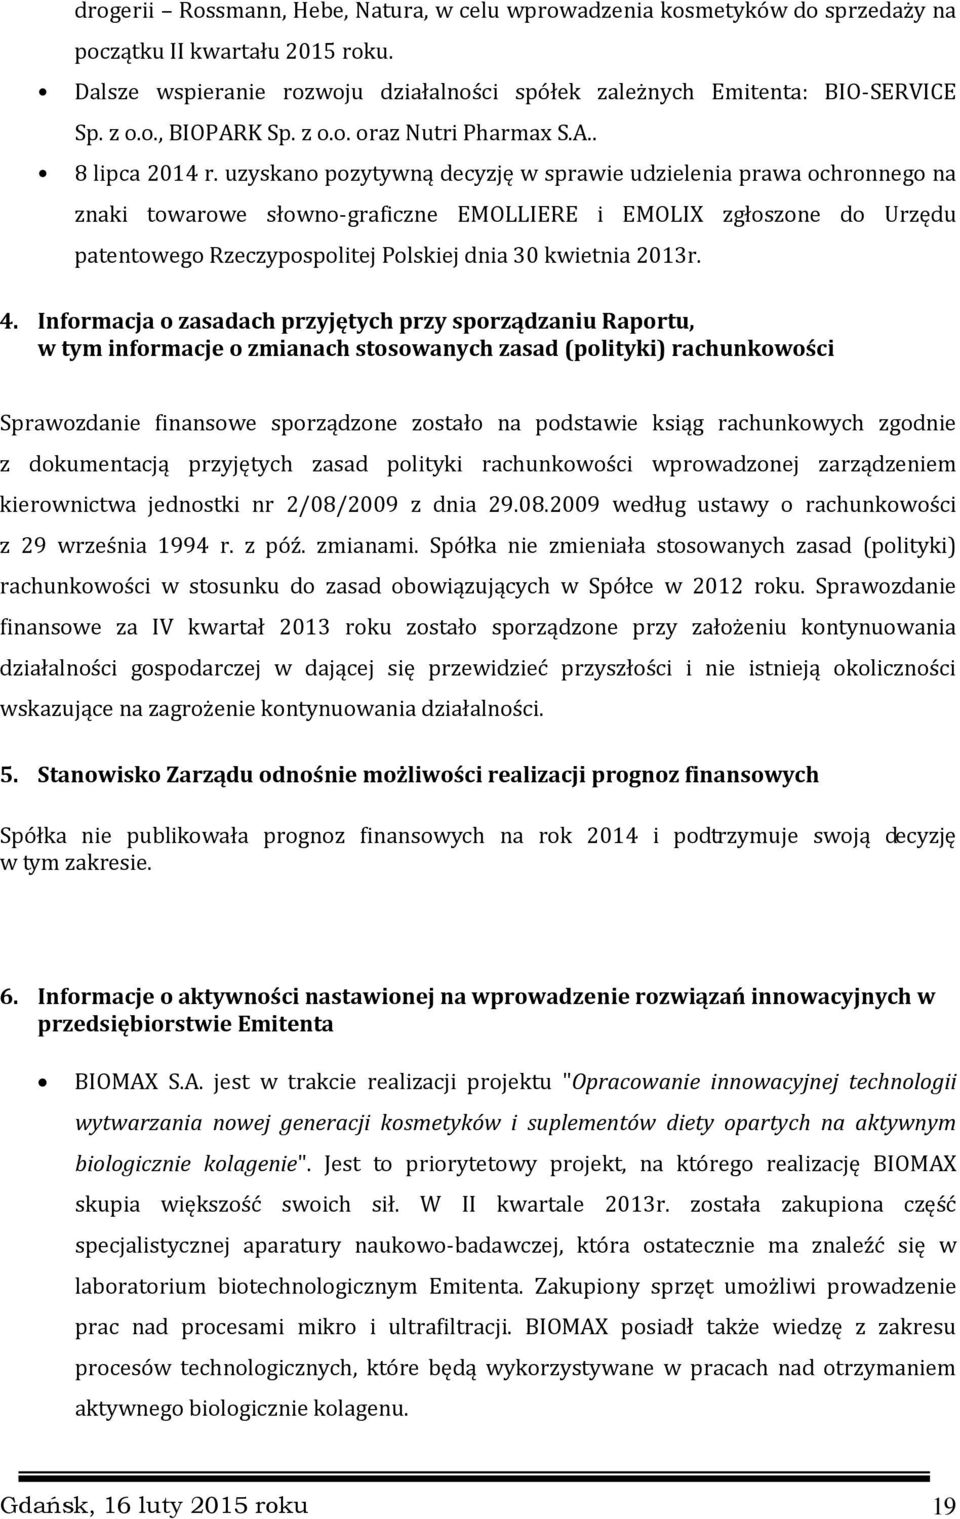 uzyskano pozytywną decyzję w sprawie udzielenia prawa ochronnego na znaki towarowe słowno-graficzne EMOLLIERE i EMOLIX zgłoszone do Urzędu patentowego Rzeczypospolitej Polskiej dnia 30 kwietnia 2013r.